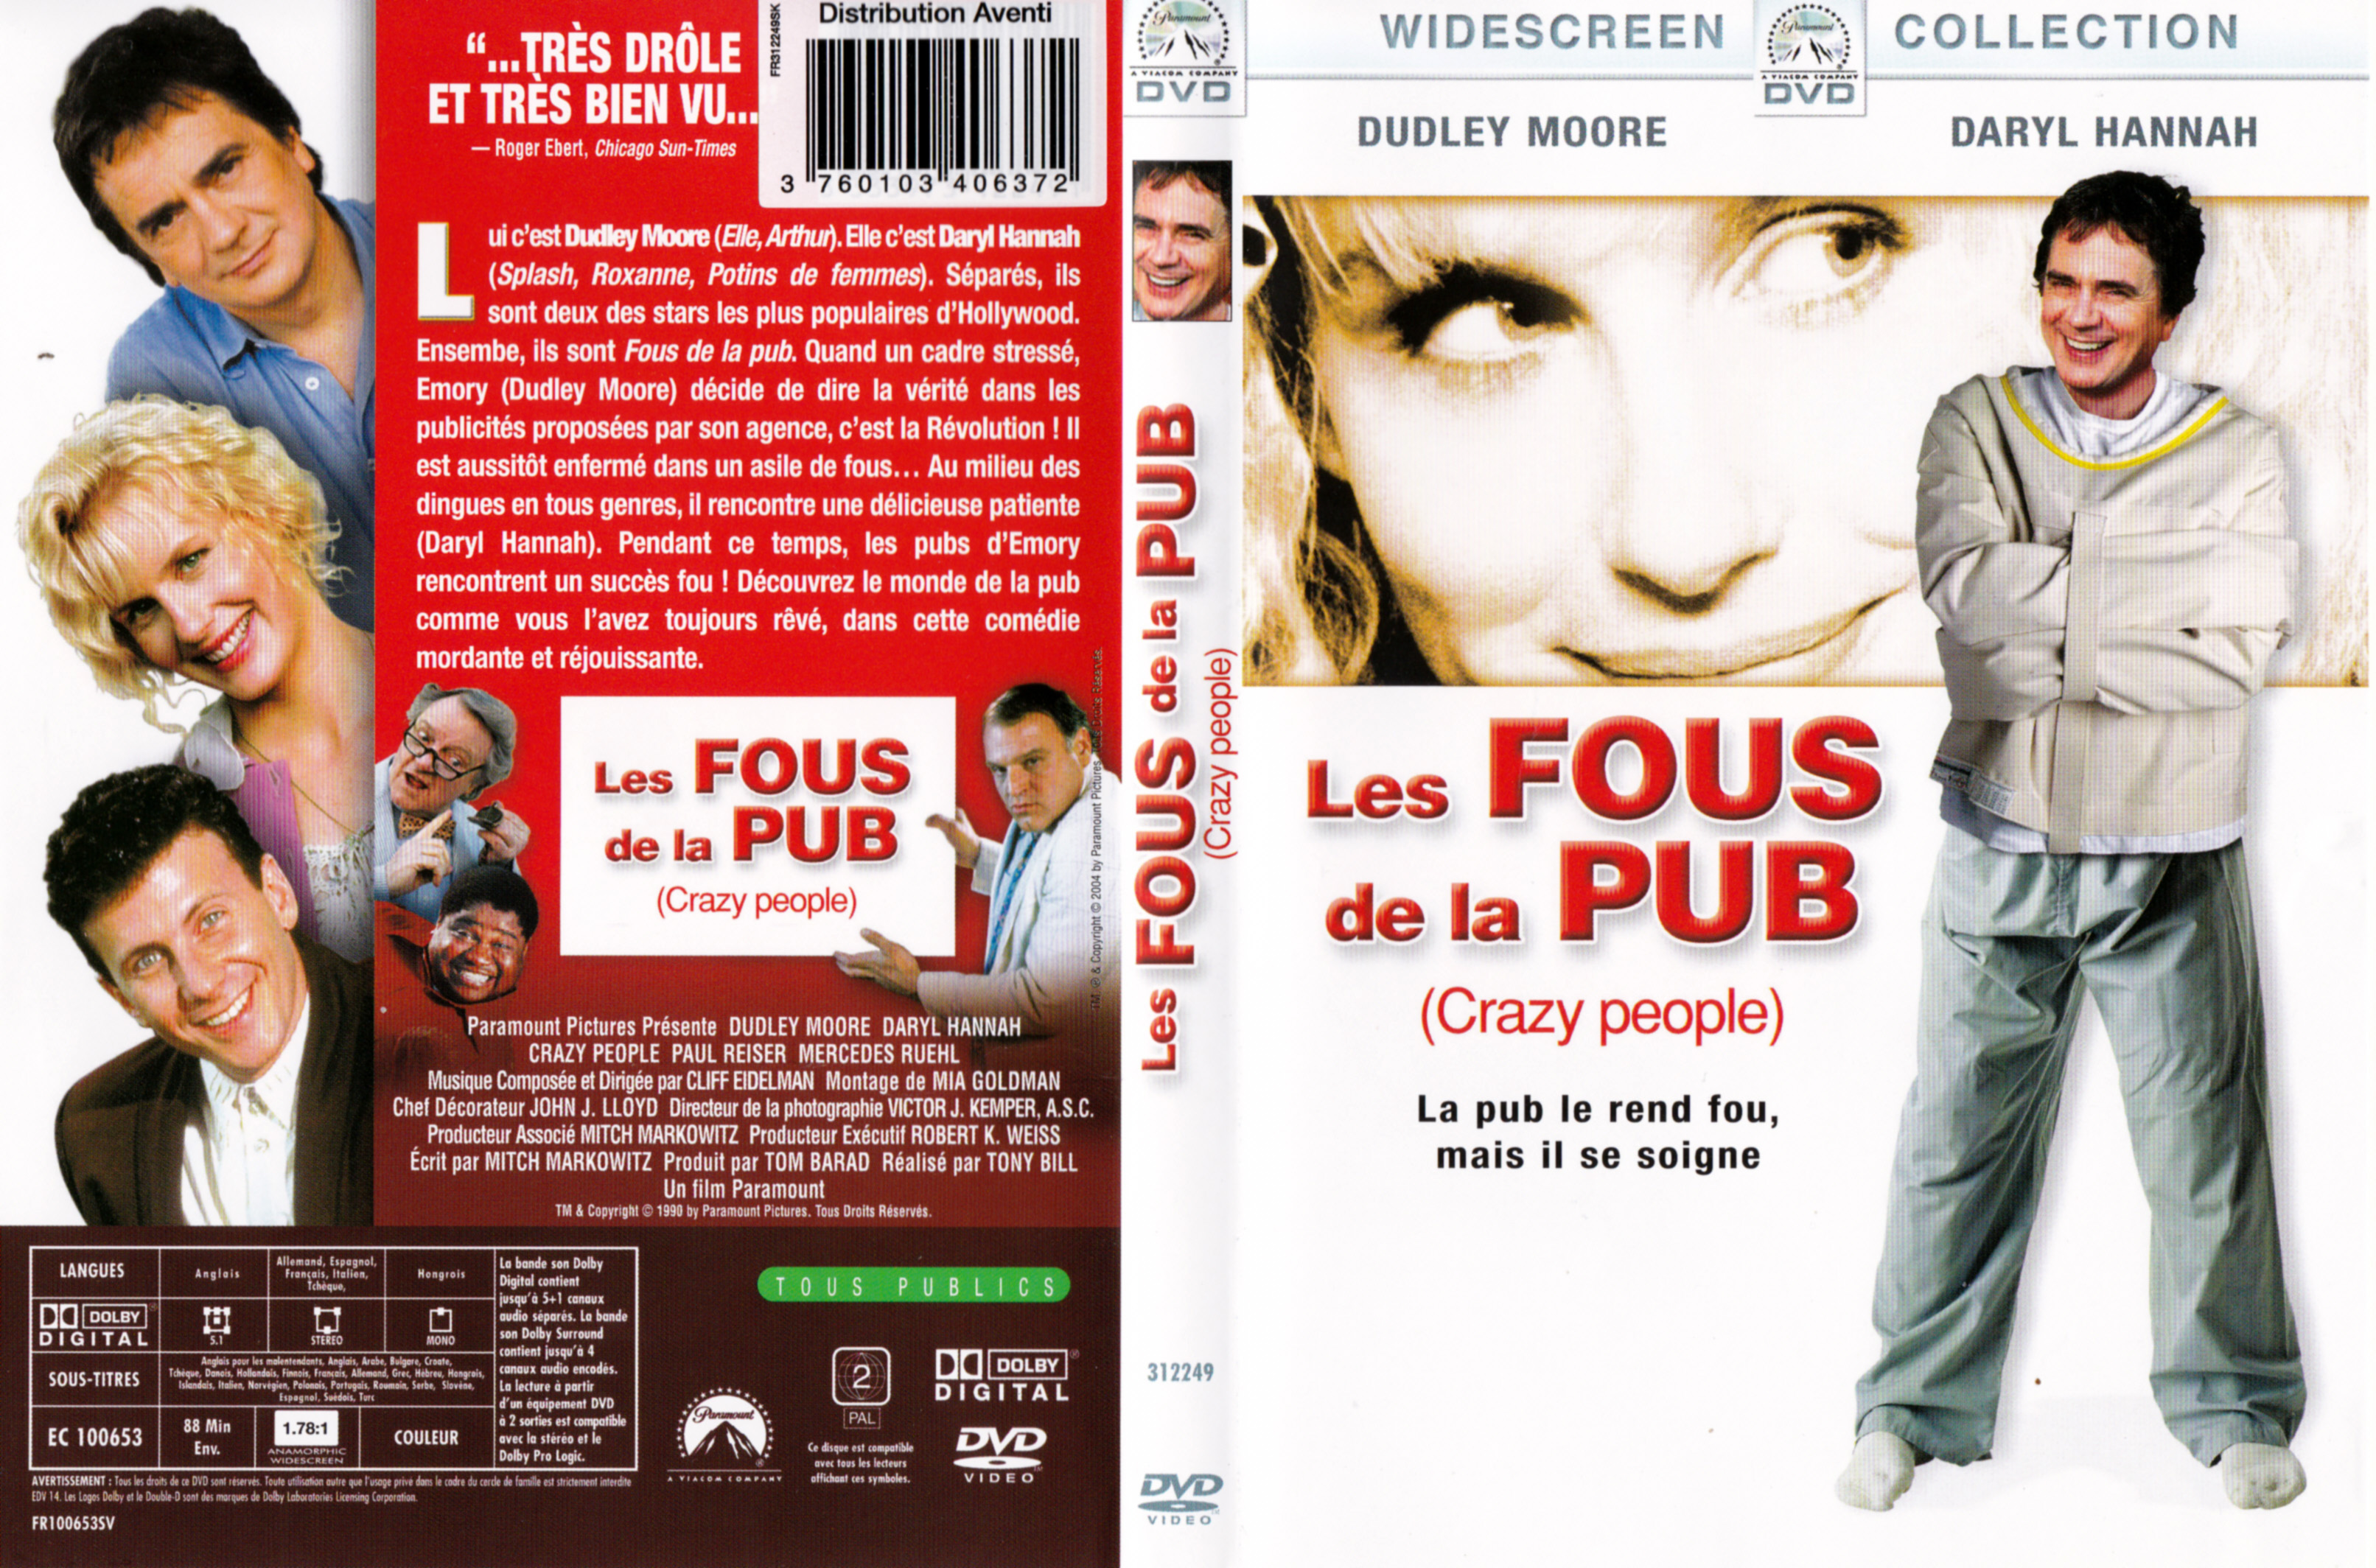 Jaquette Dvd De Les Fous De La Pub Cinéma Passion